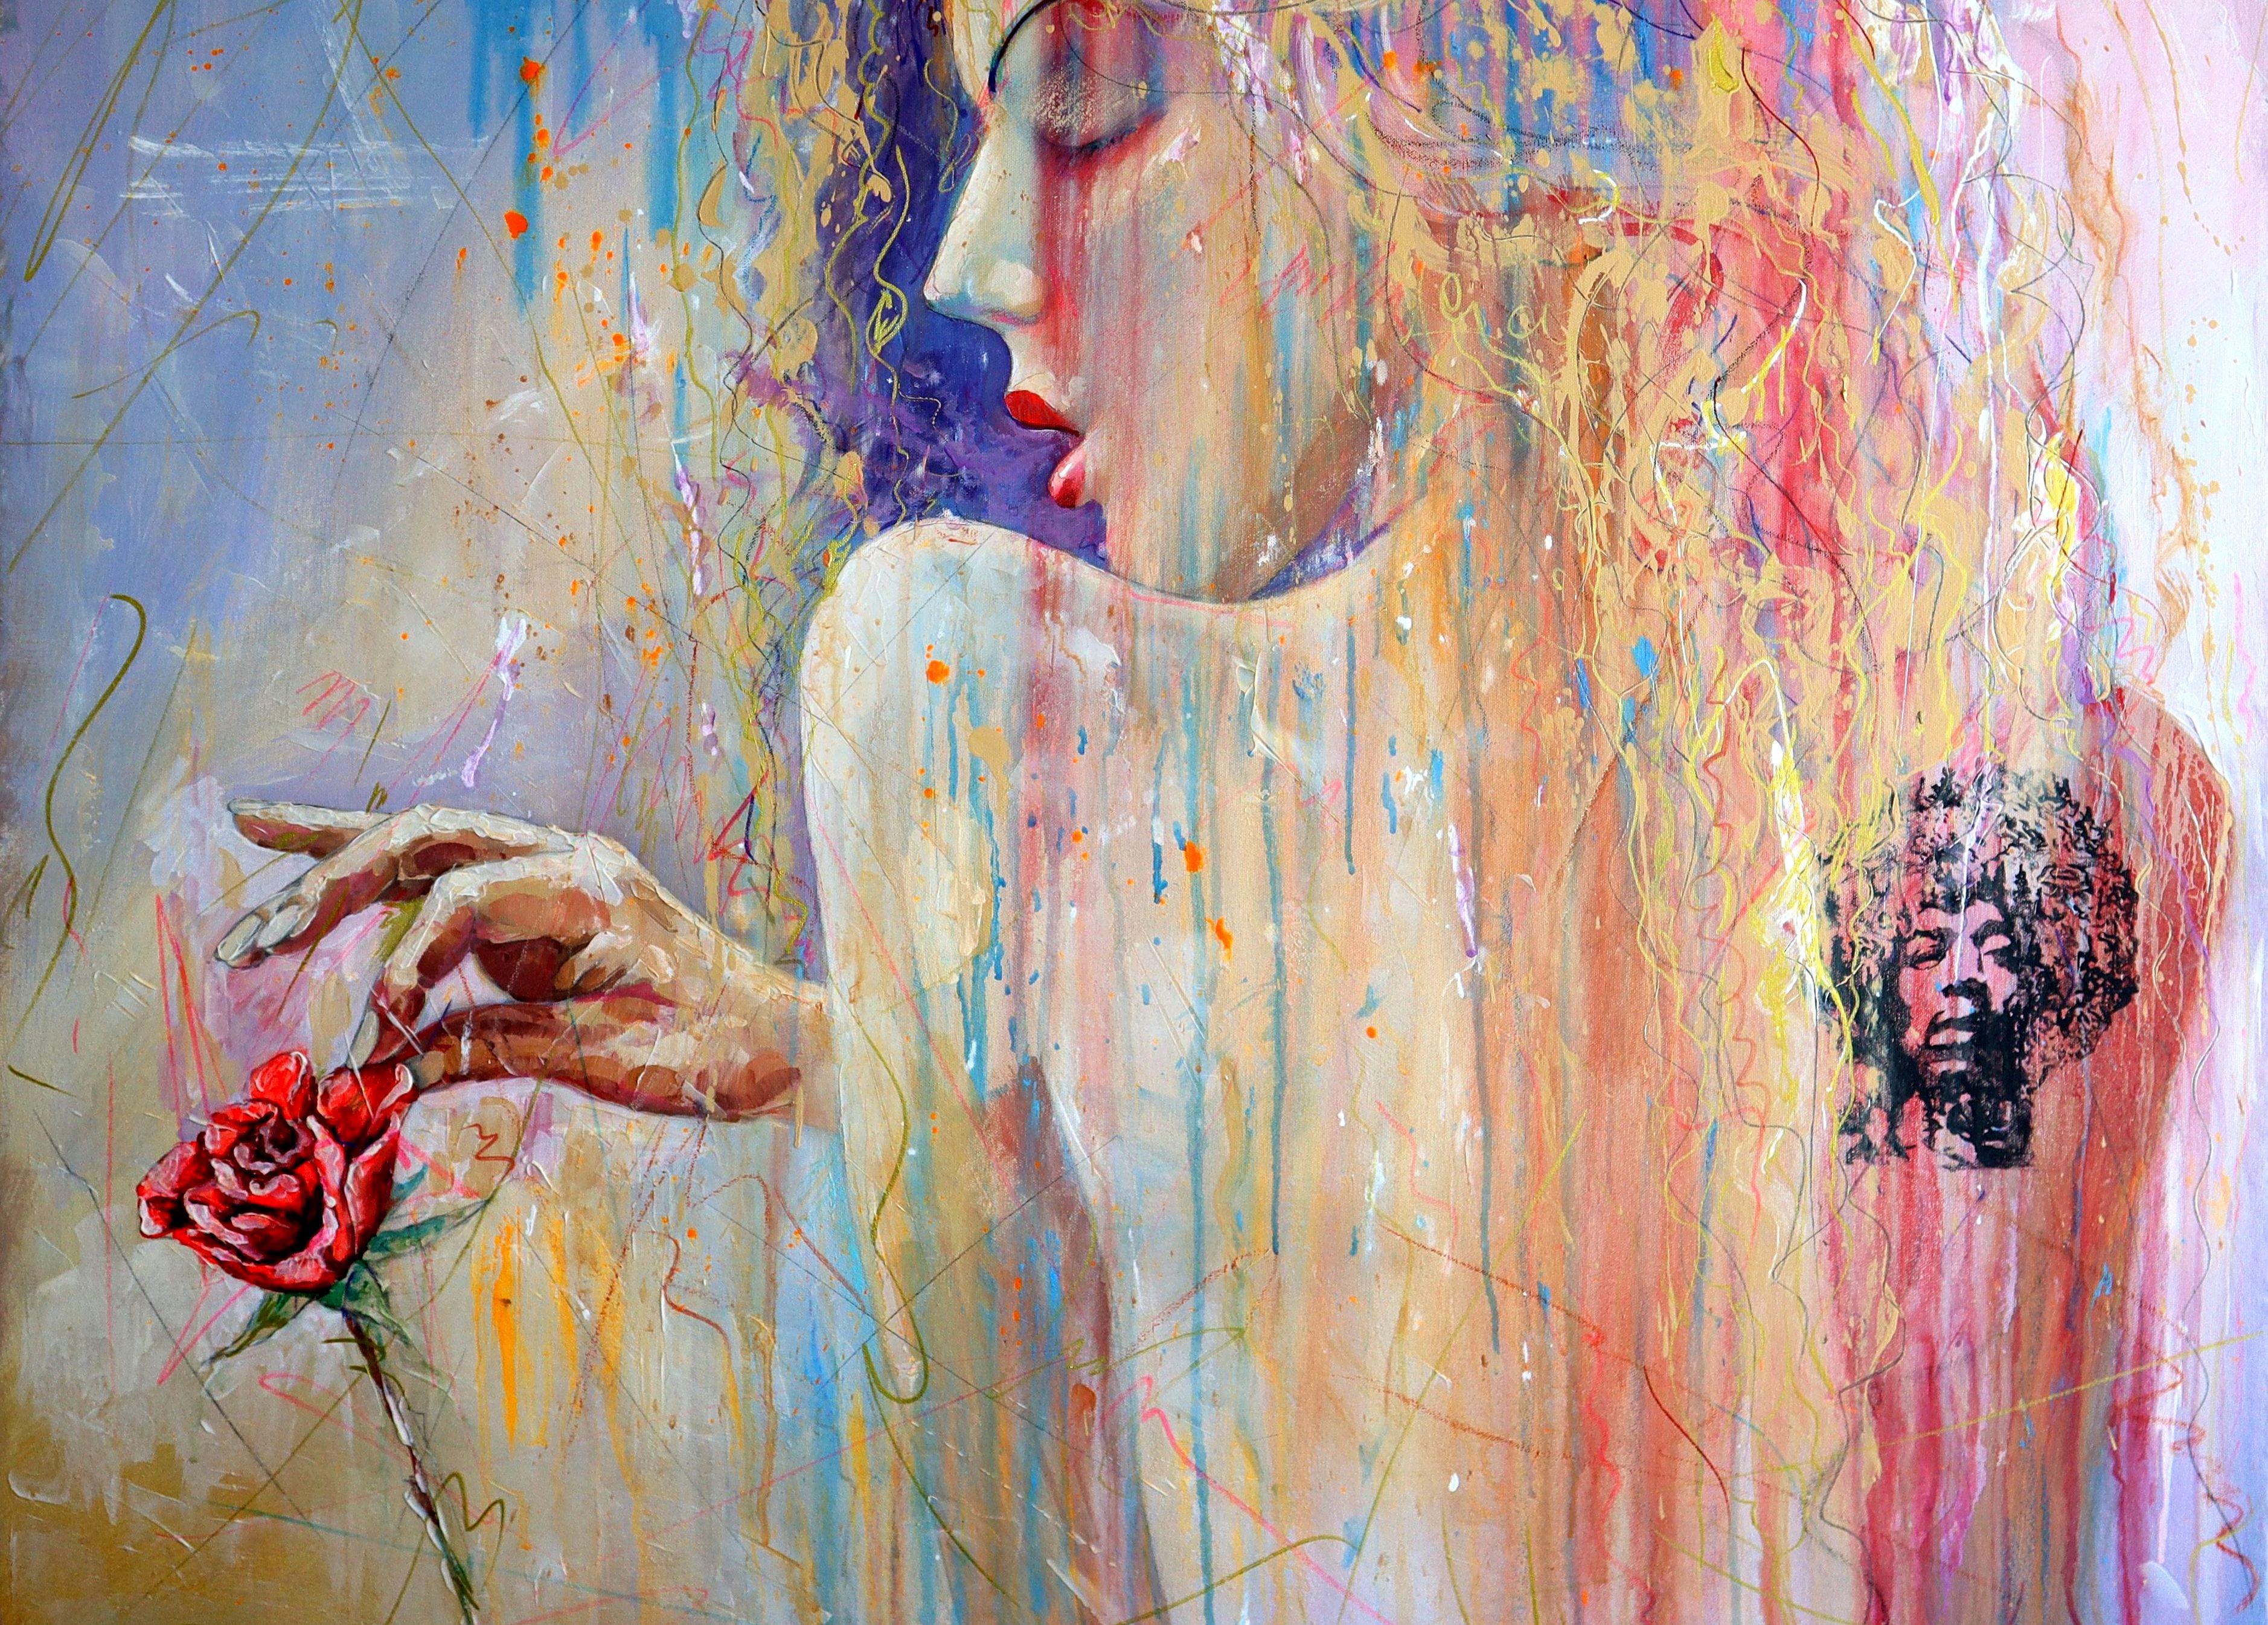 Rose, Girl, Tattoo and Hendrix - Impressionist Painting by RAKHMET REDZHEPOV (RAMZI)